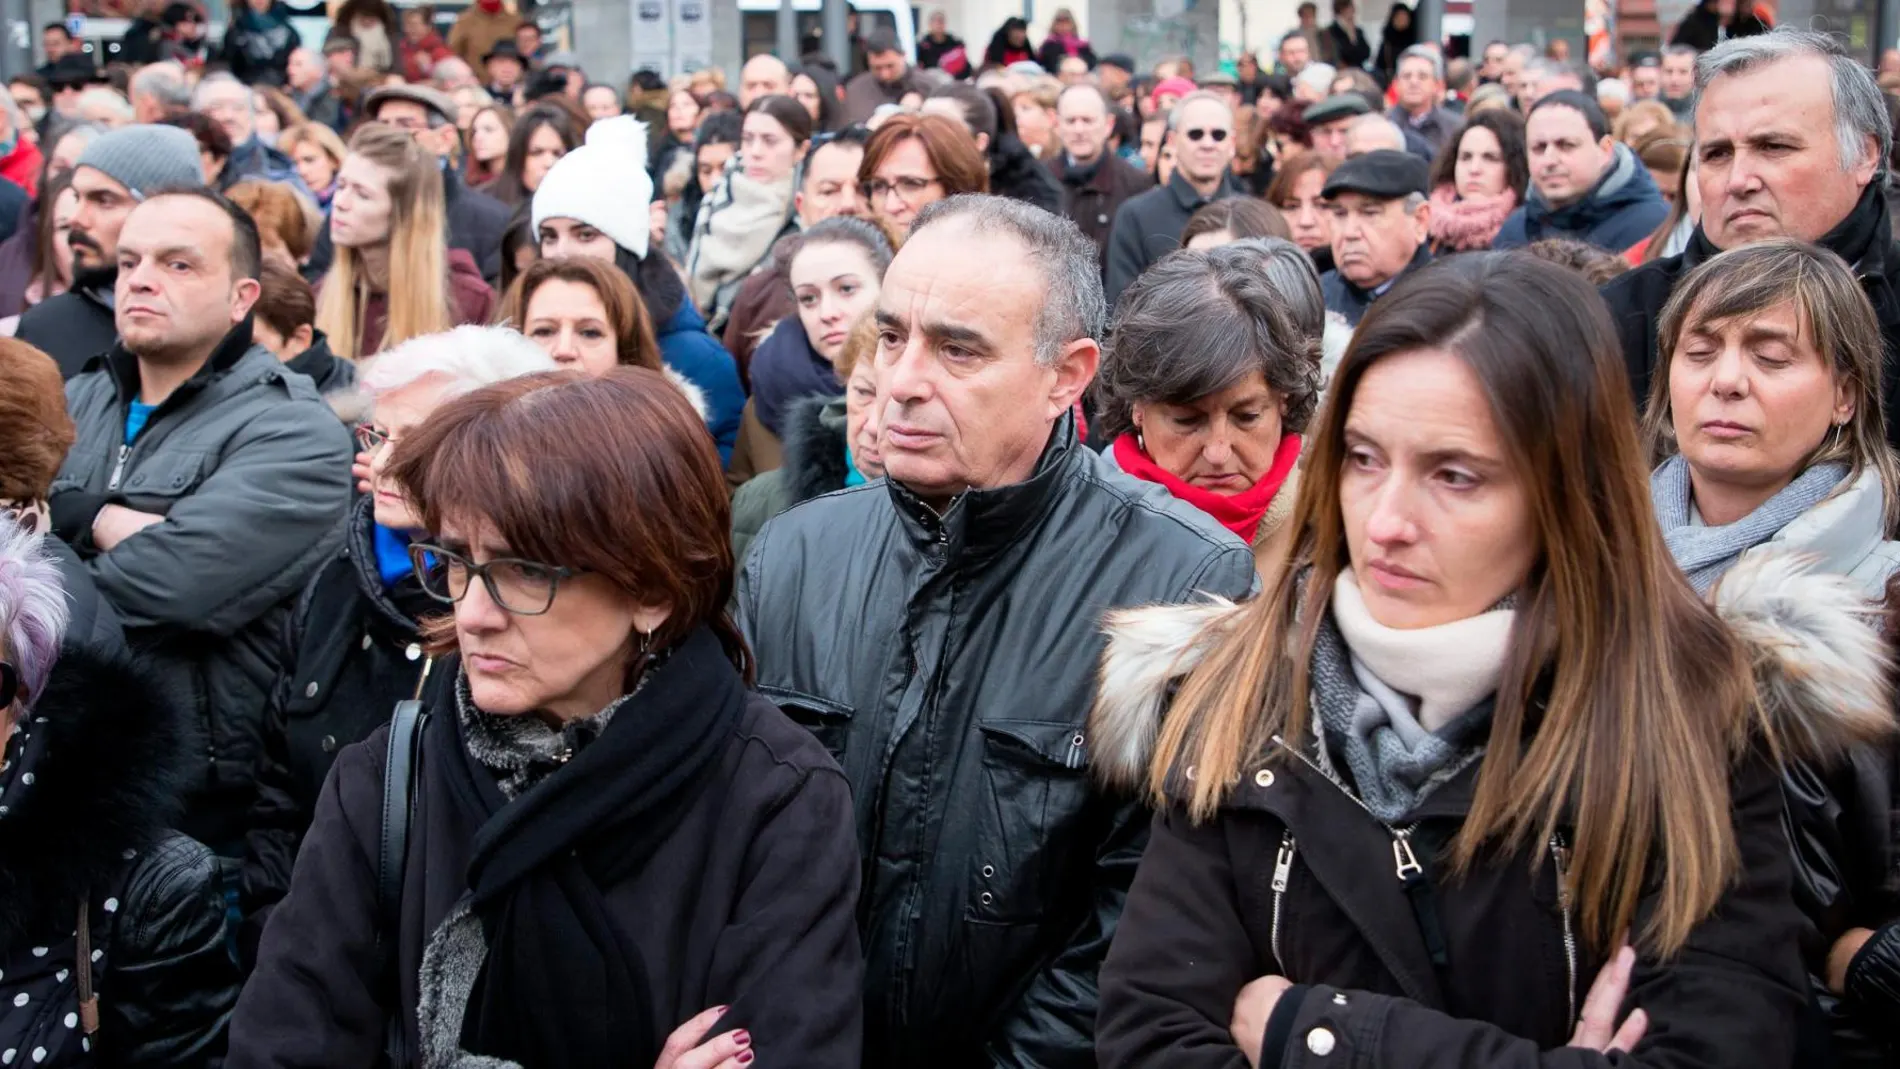 Multitudinaria y dolorosa concentración en la Plaza de la Marina de Zamora en apoyo y solidaridad de la familia de Laura Luelmo